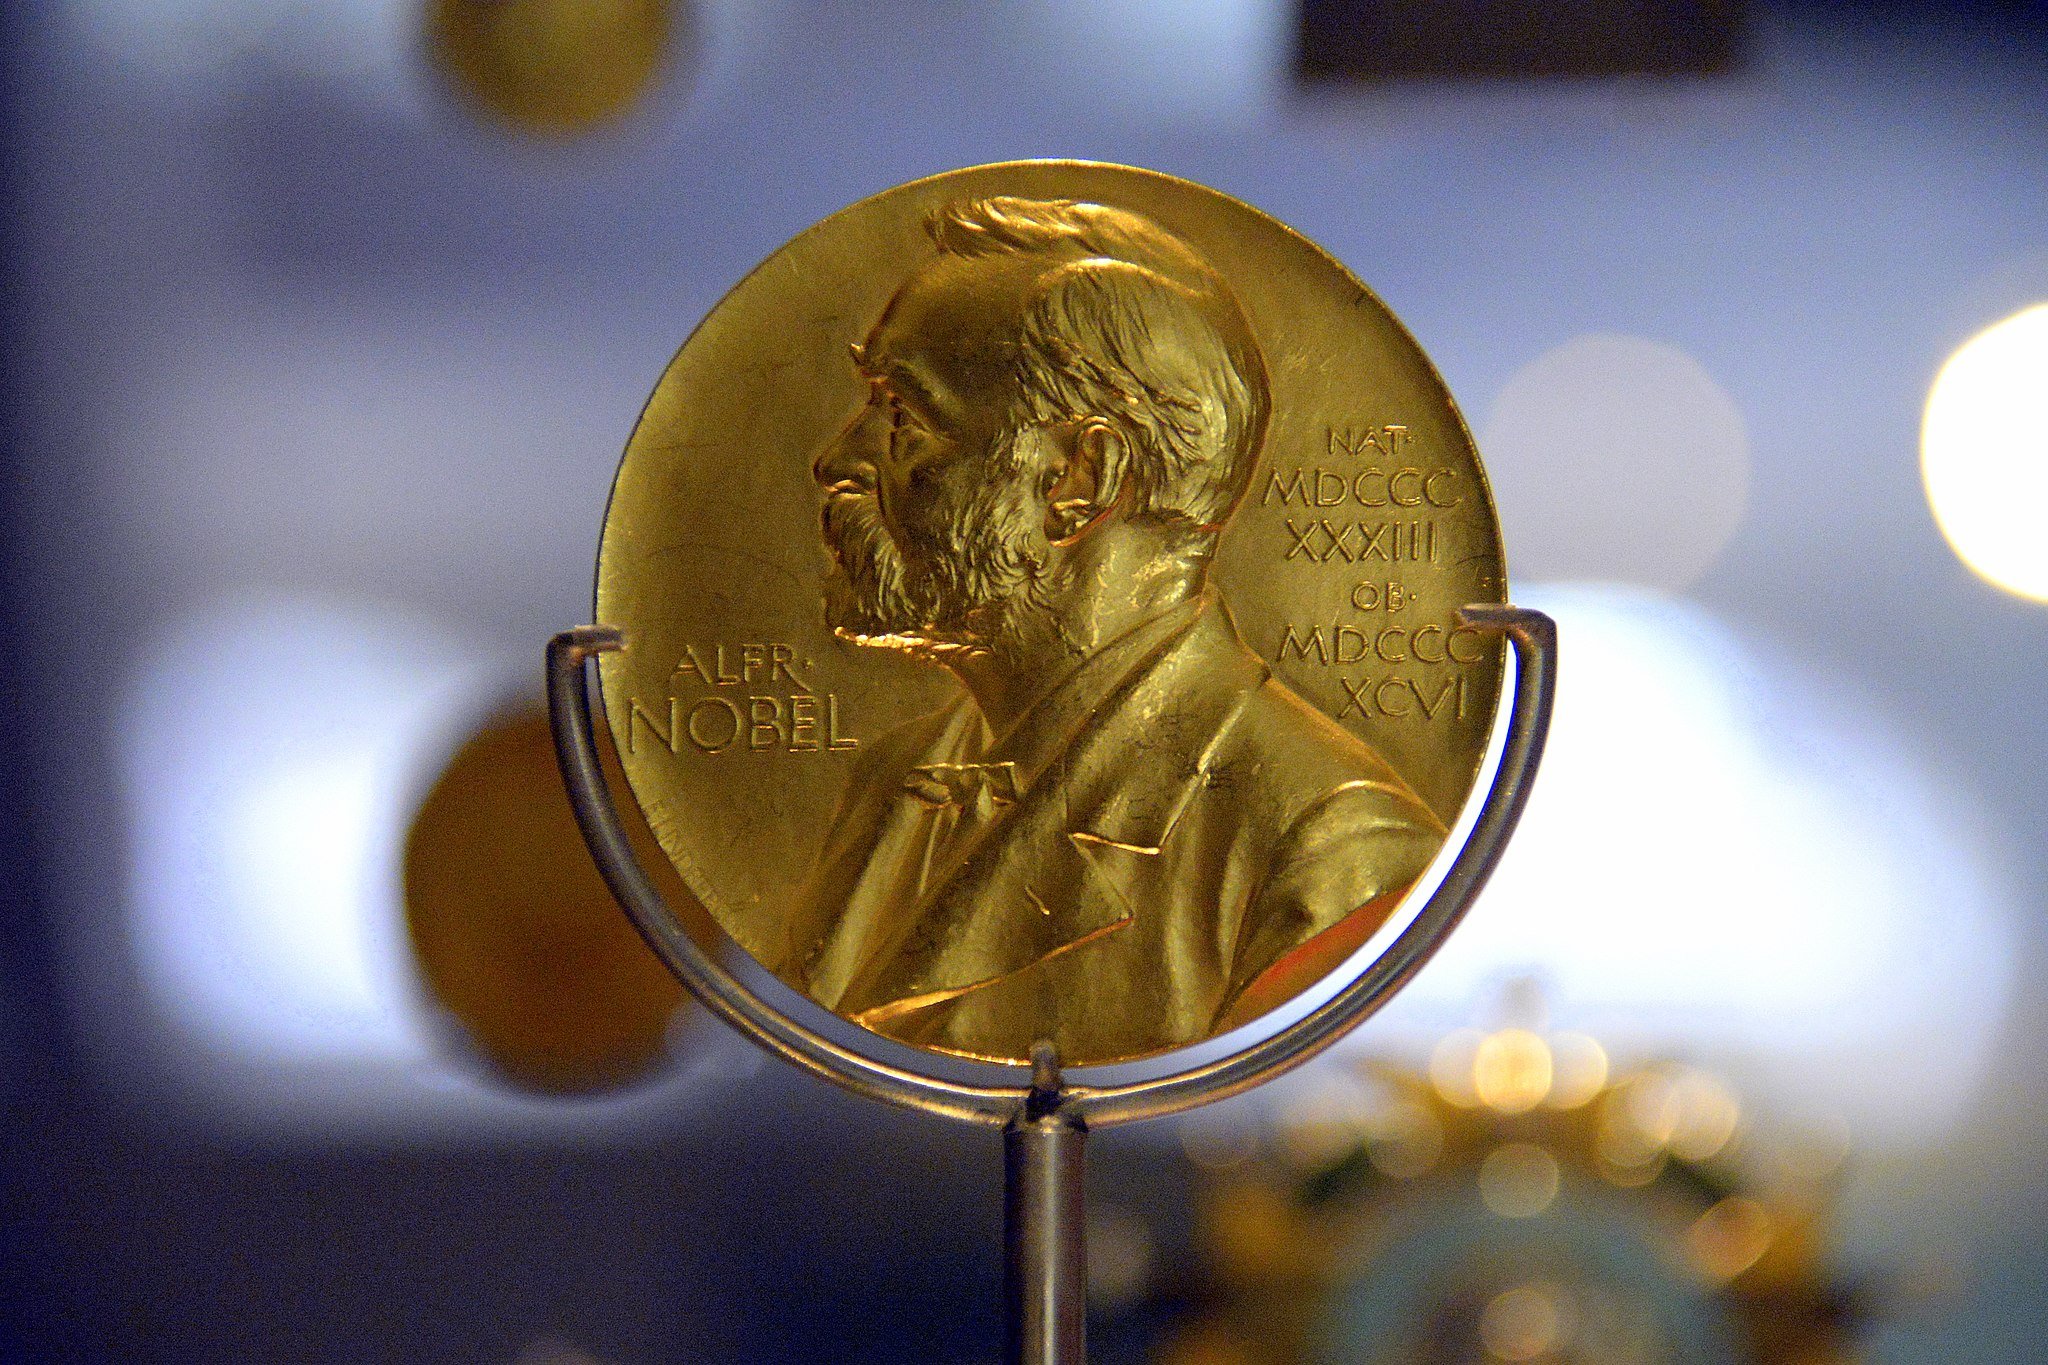 Un guanyador rus del Premi Nobel lliura la seva medalla a un fons de refugiats